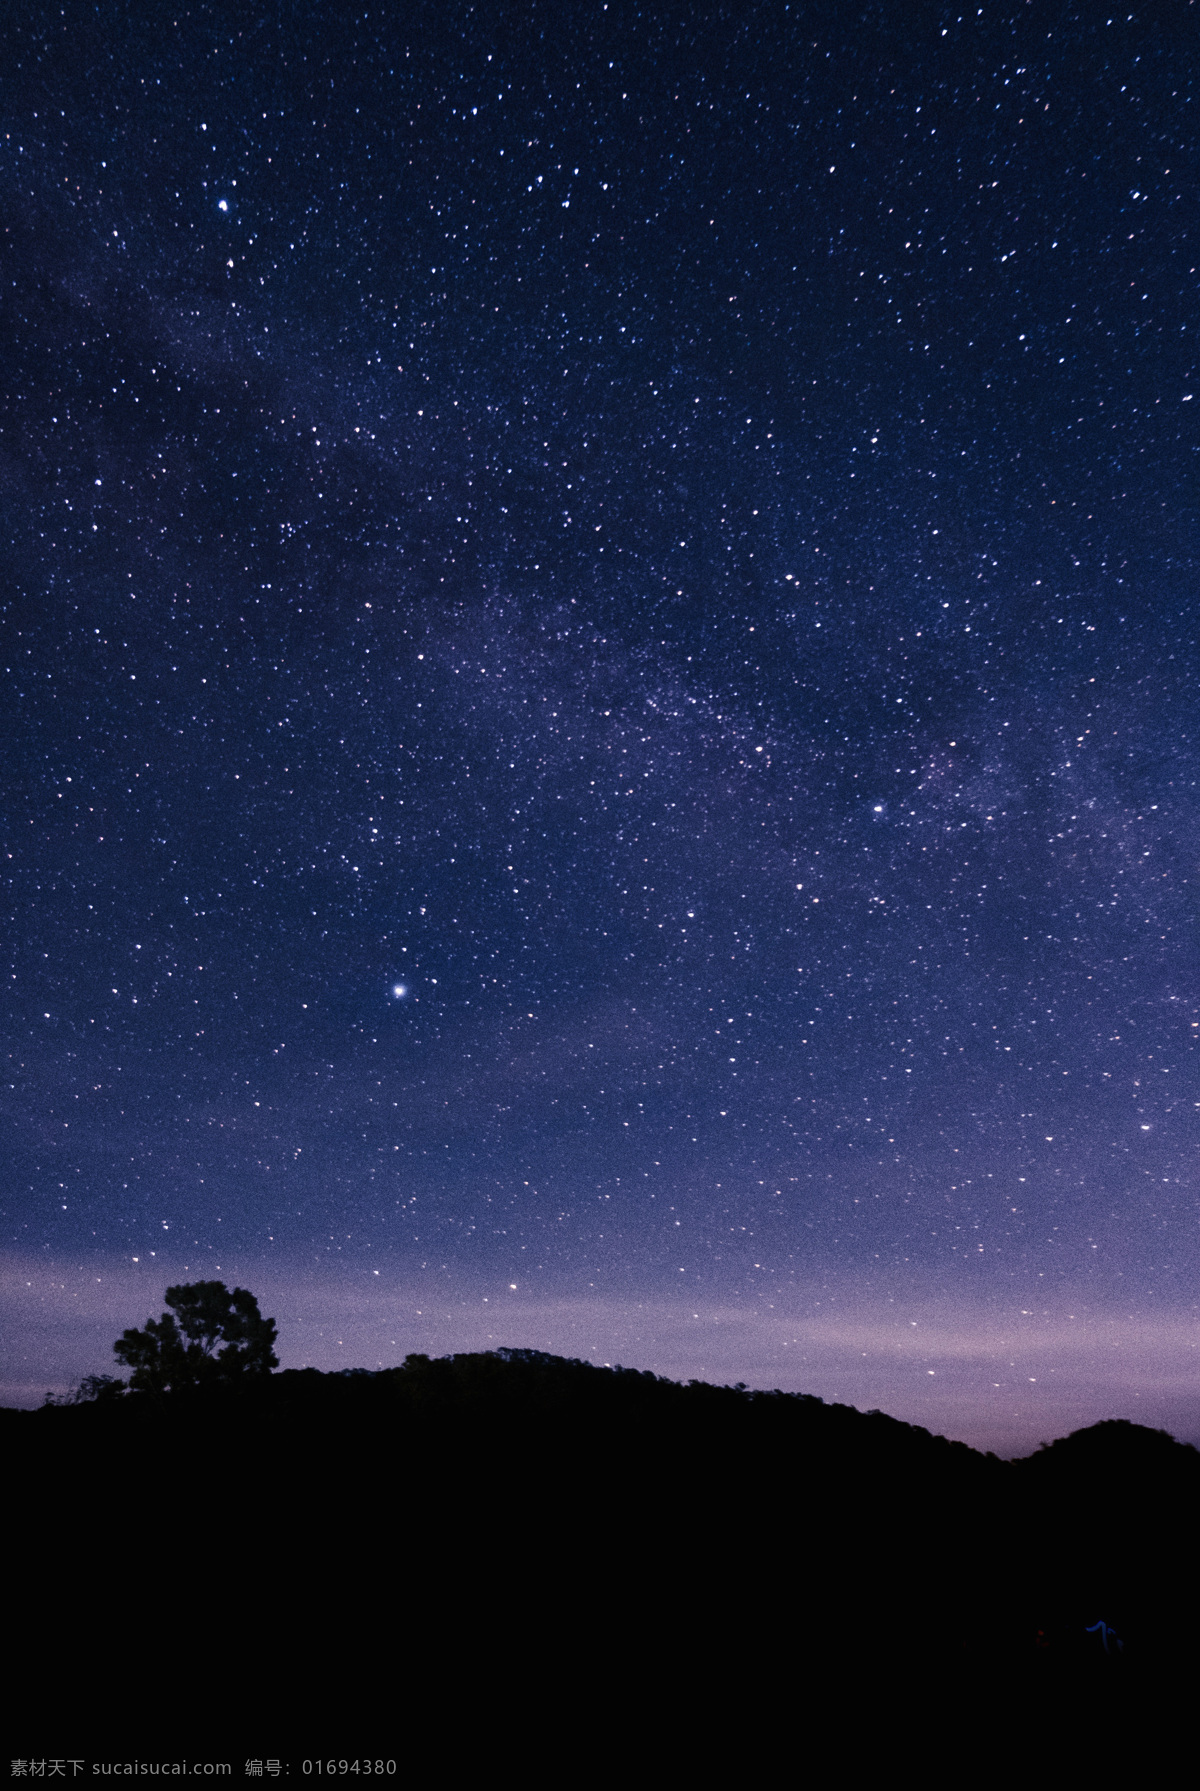 唯美 浪漫 紫色 星空 浩瀚 银河 宇宙 星星 壁纸 黑夜 夜晚 星河 繁星 太空 手机屏保 自然景观 自然风光